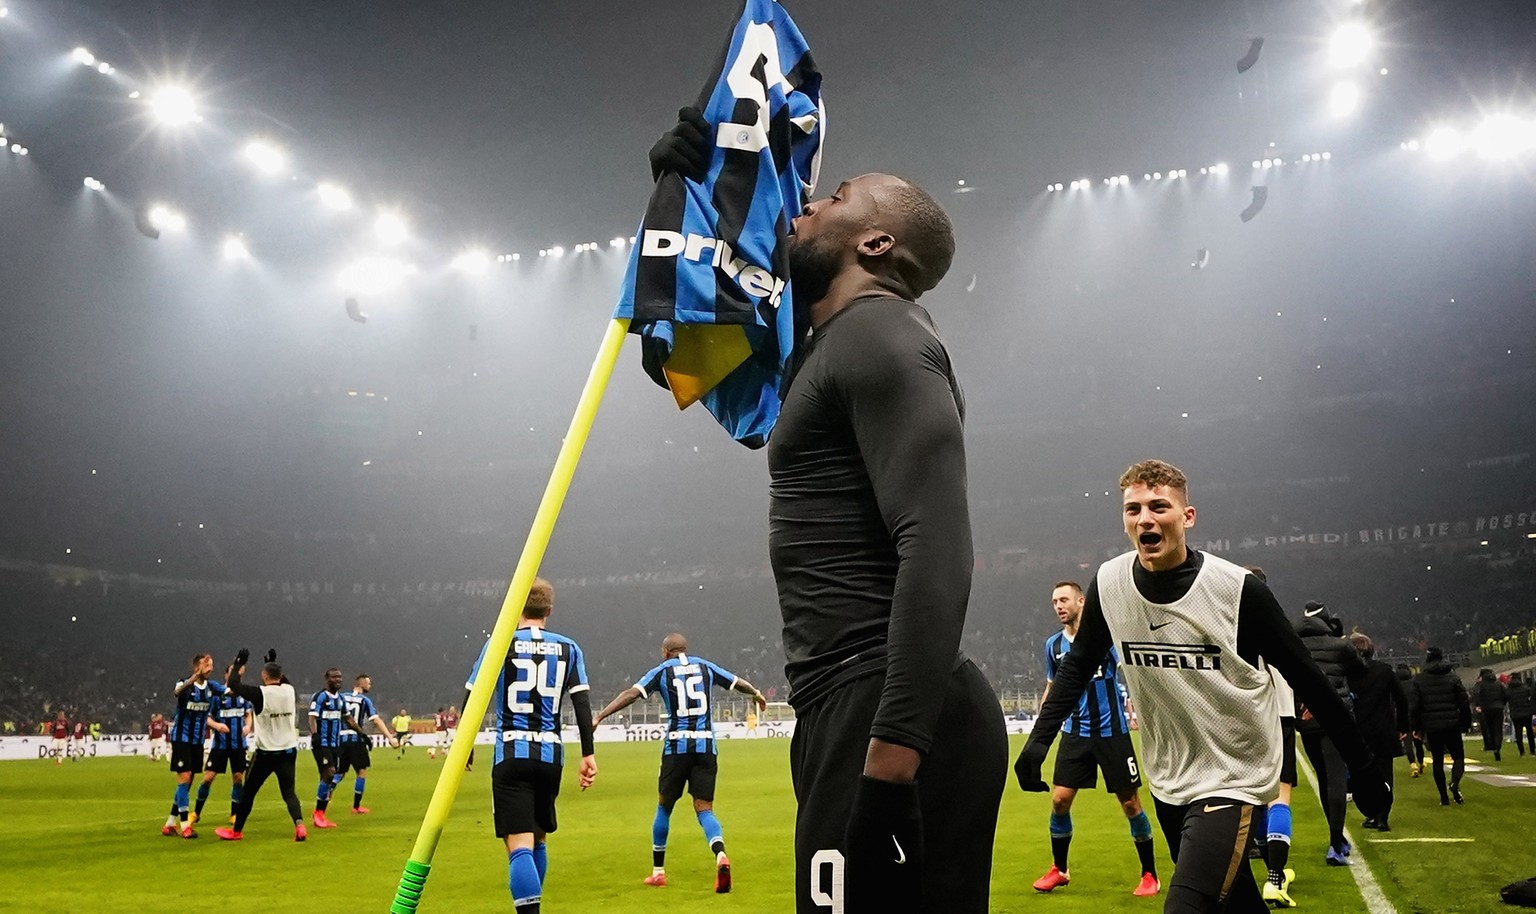 Nach dem Derbysieg ist bei Inter Mailand die Hoffnung auf den ersten Scudetto seit 2010 so gross wie lange nicht mehr.